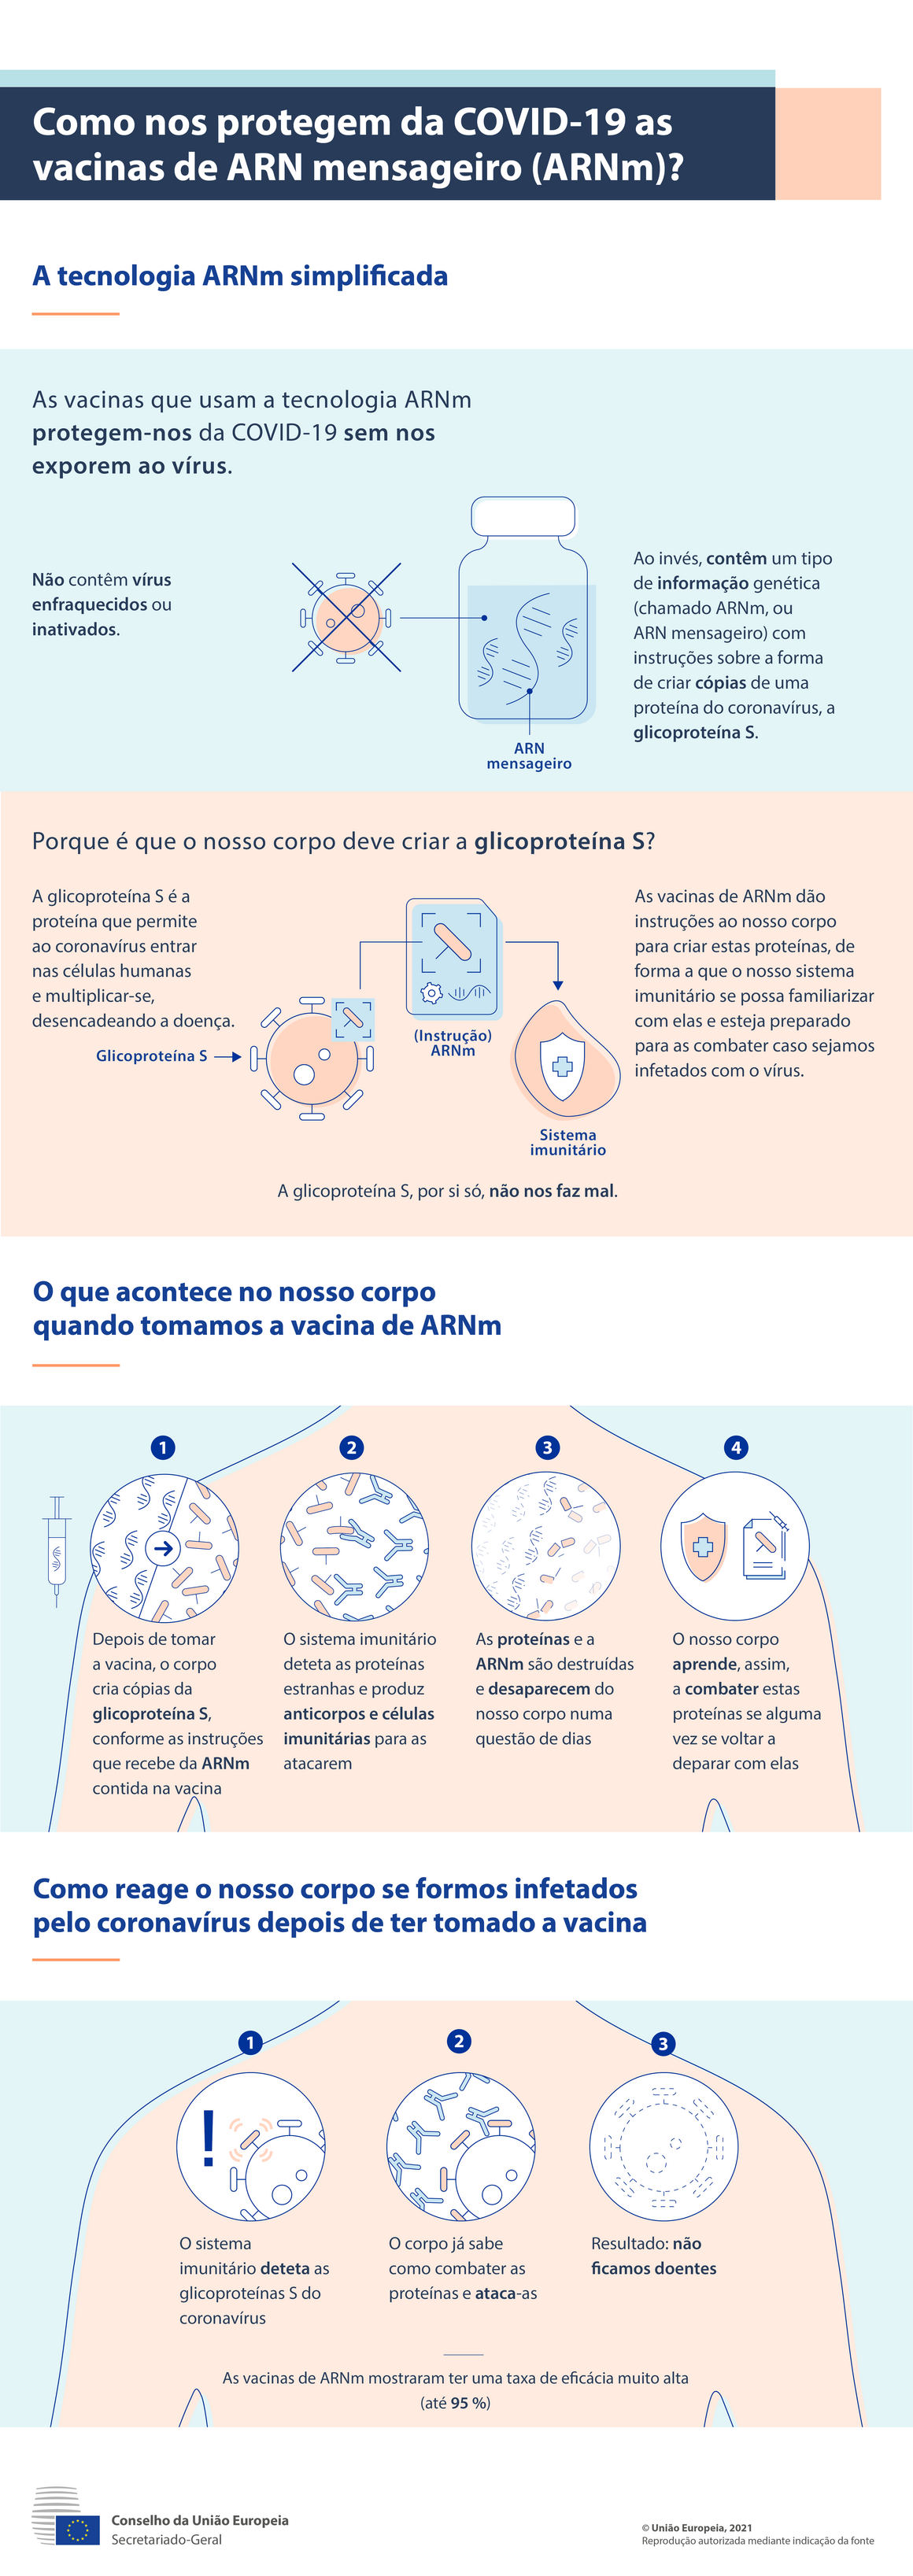 Infografia: Como nos protegem da COVID-19 as vacinas de ARN mensageiro (ARNm)?